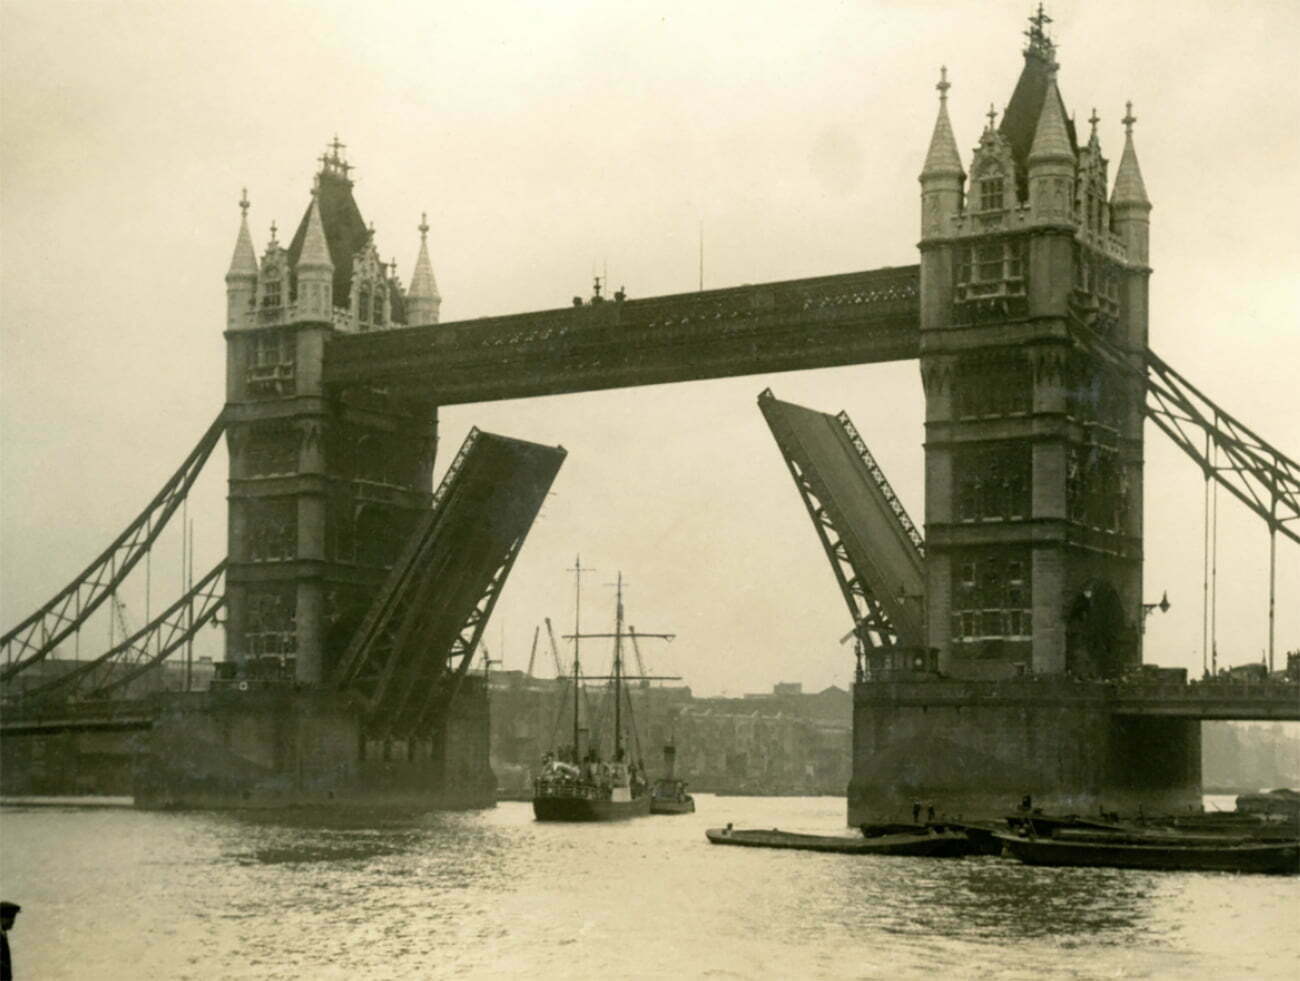 Imagem do navio Quest deixando Londres